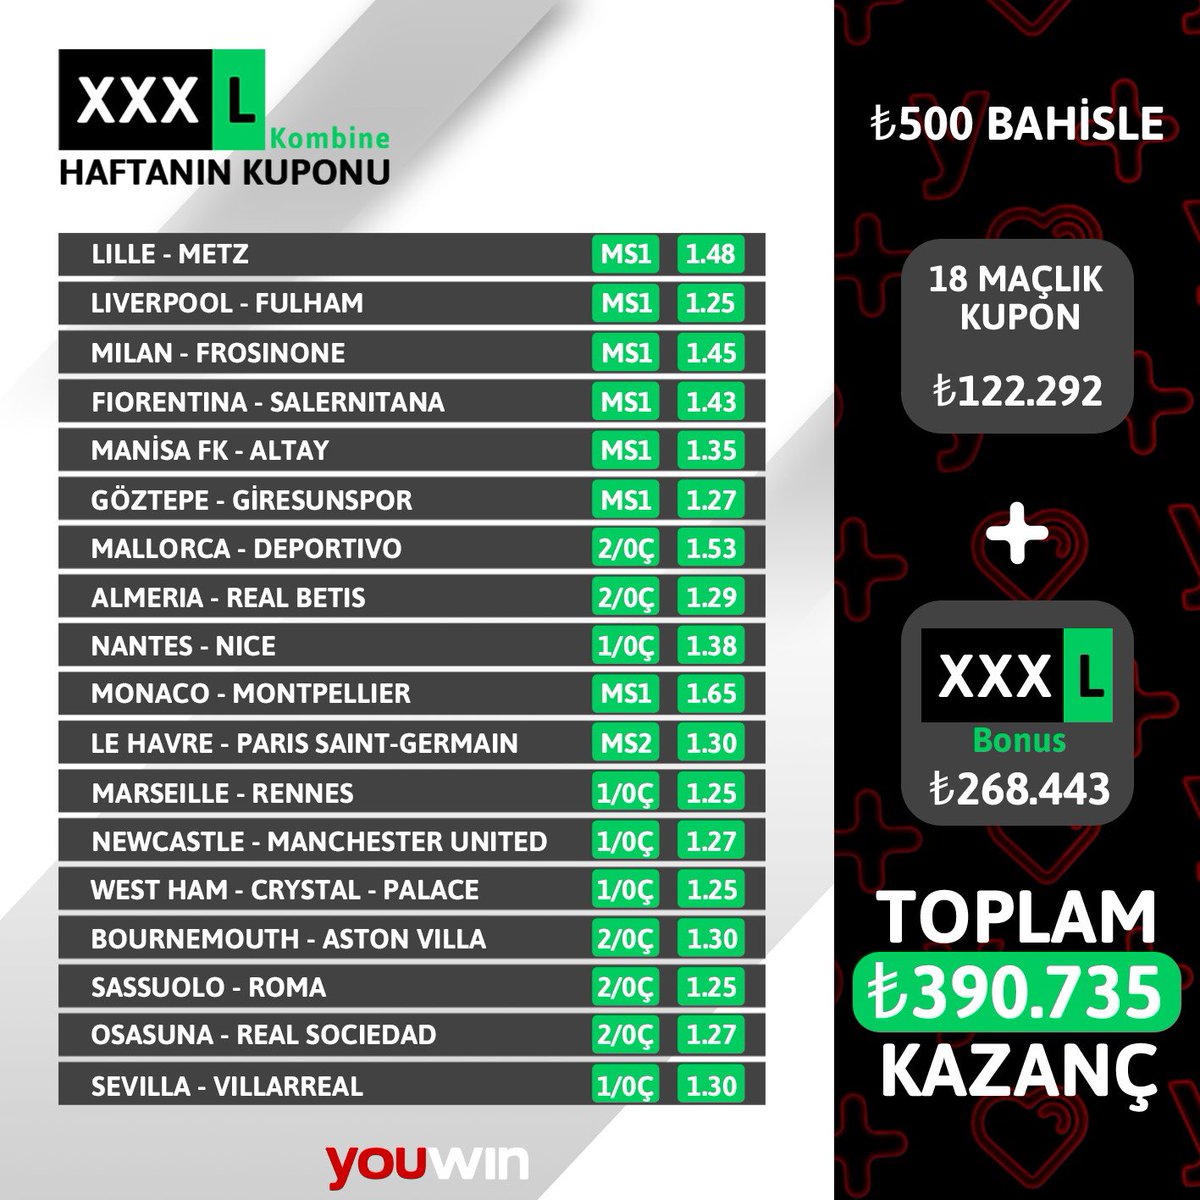 Youwin’de haftanın XXXL kombinesi kazandırmaya devam ediyor💰 500₺ bahisle 122.292₺ ➕ 268.443₺ bonus kazanan üyemizi tebrik ederiz 💸